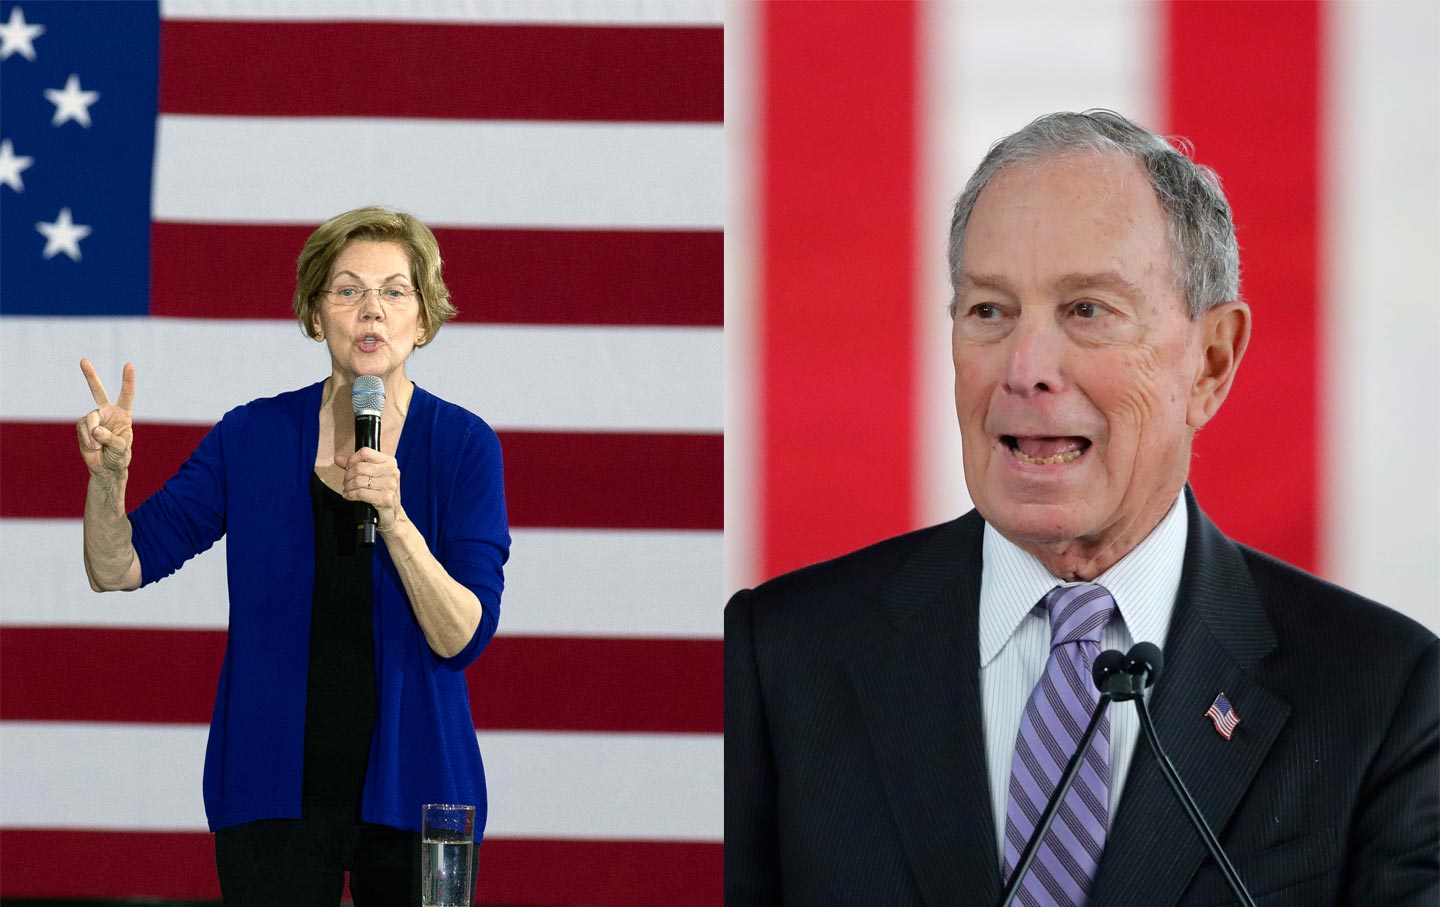 Elizabeth Warren and Michael Bloomberg